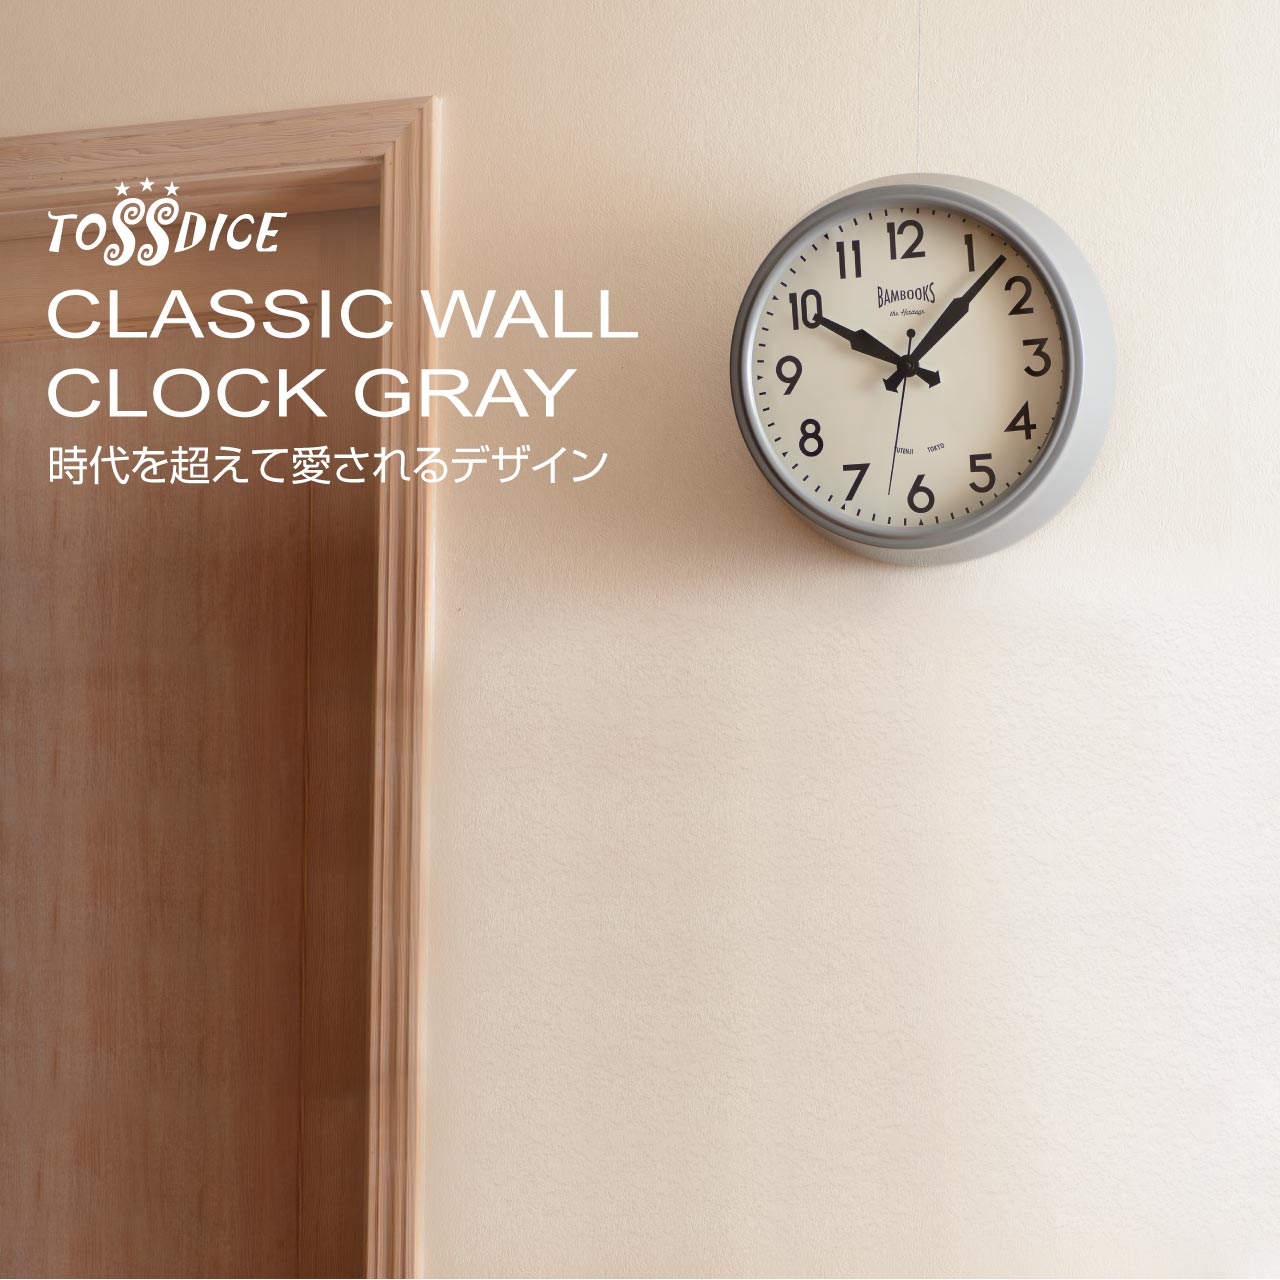 CLASSIC WALL CLOCK GRAY。時代を超えて愛されるデザイン。 | TOSSDICE